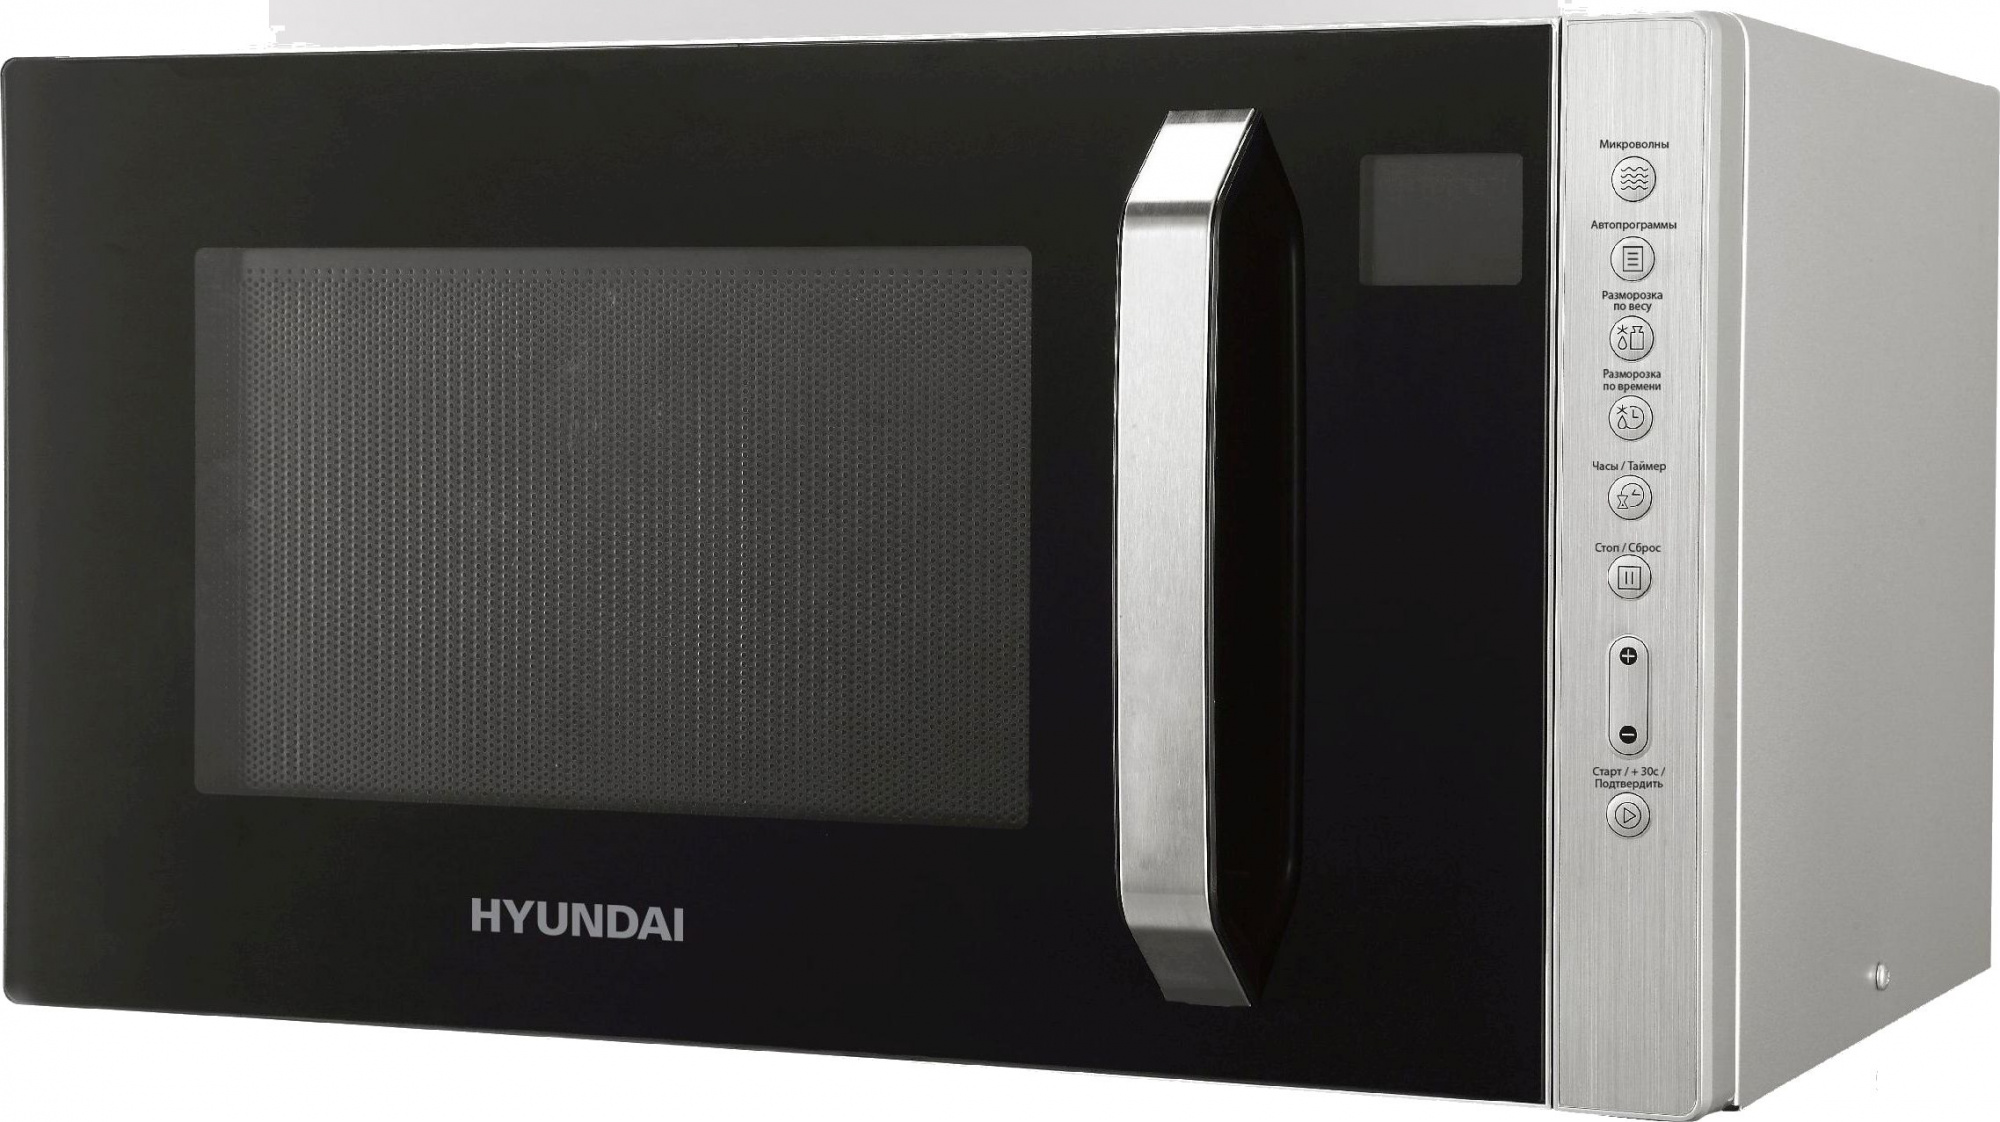 Микроволновая печь Hyundai HYM-M2066 23 л, 800 Вт, серебристый (1530185)